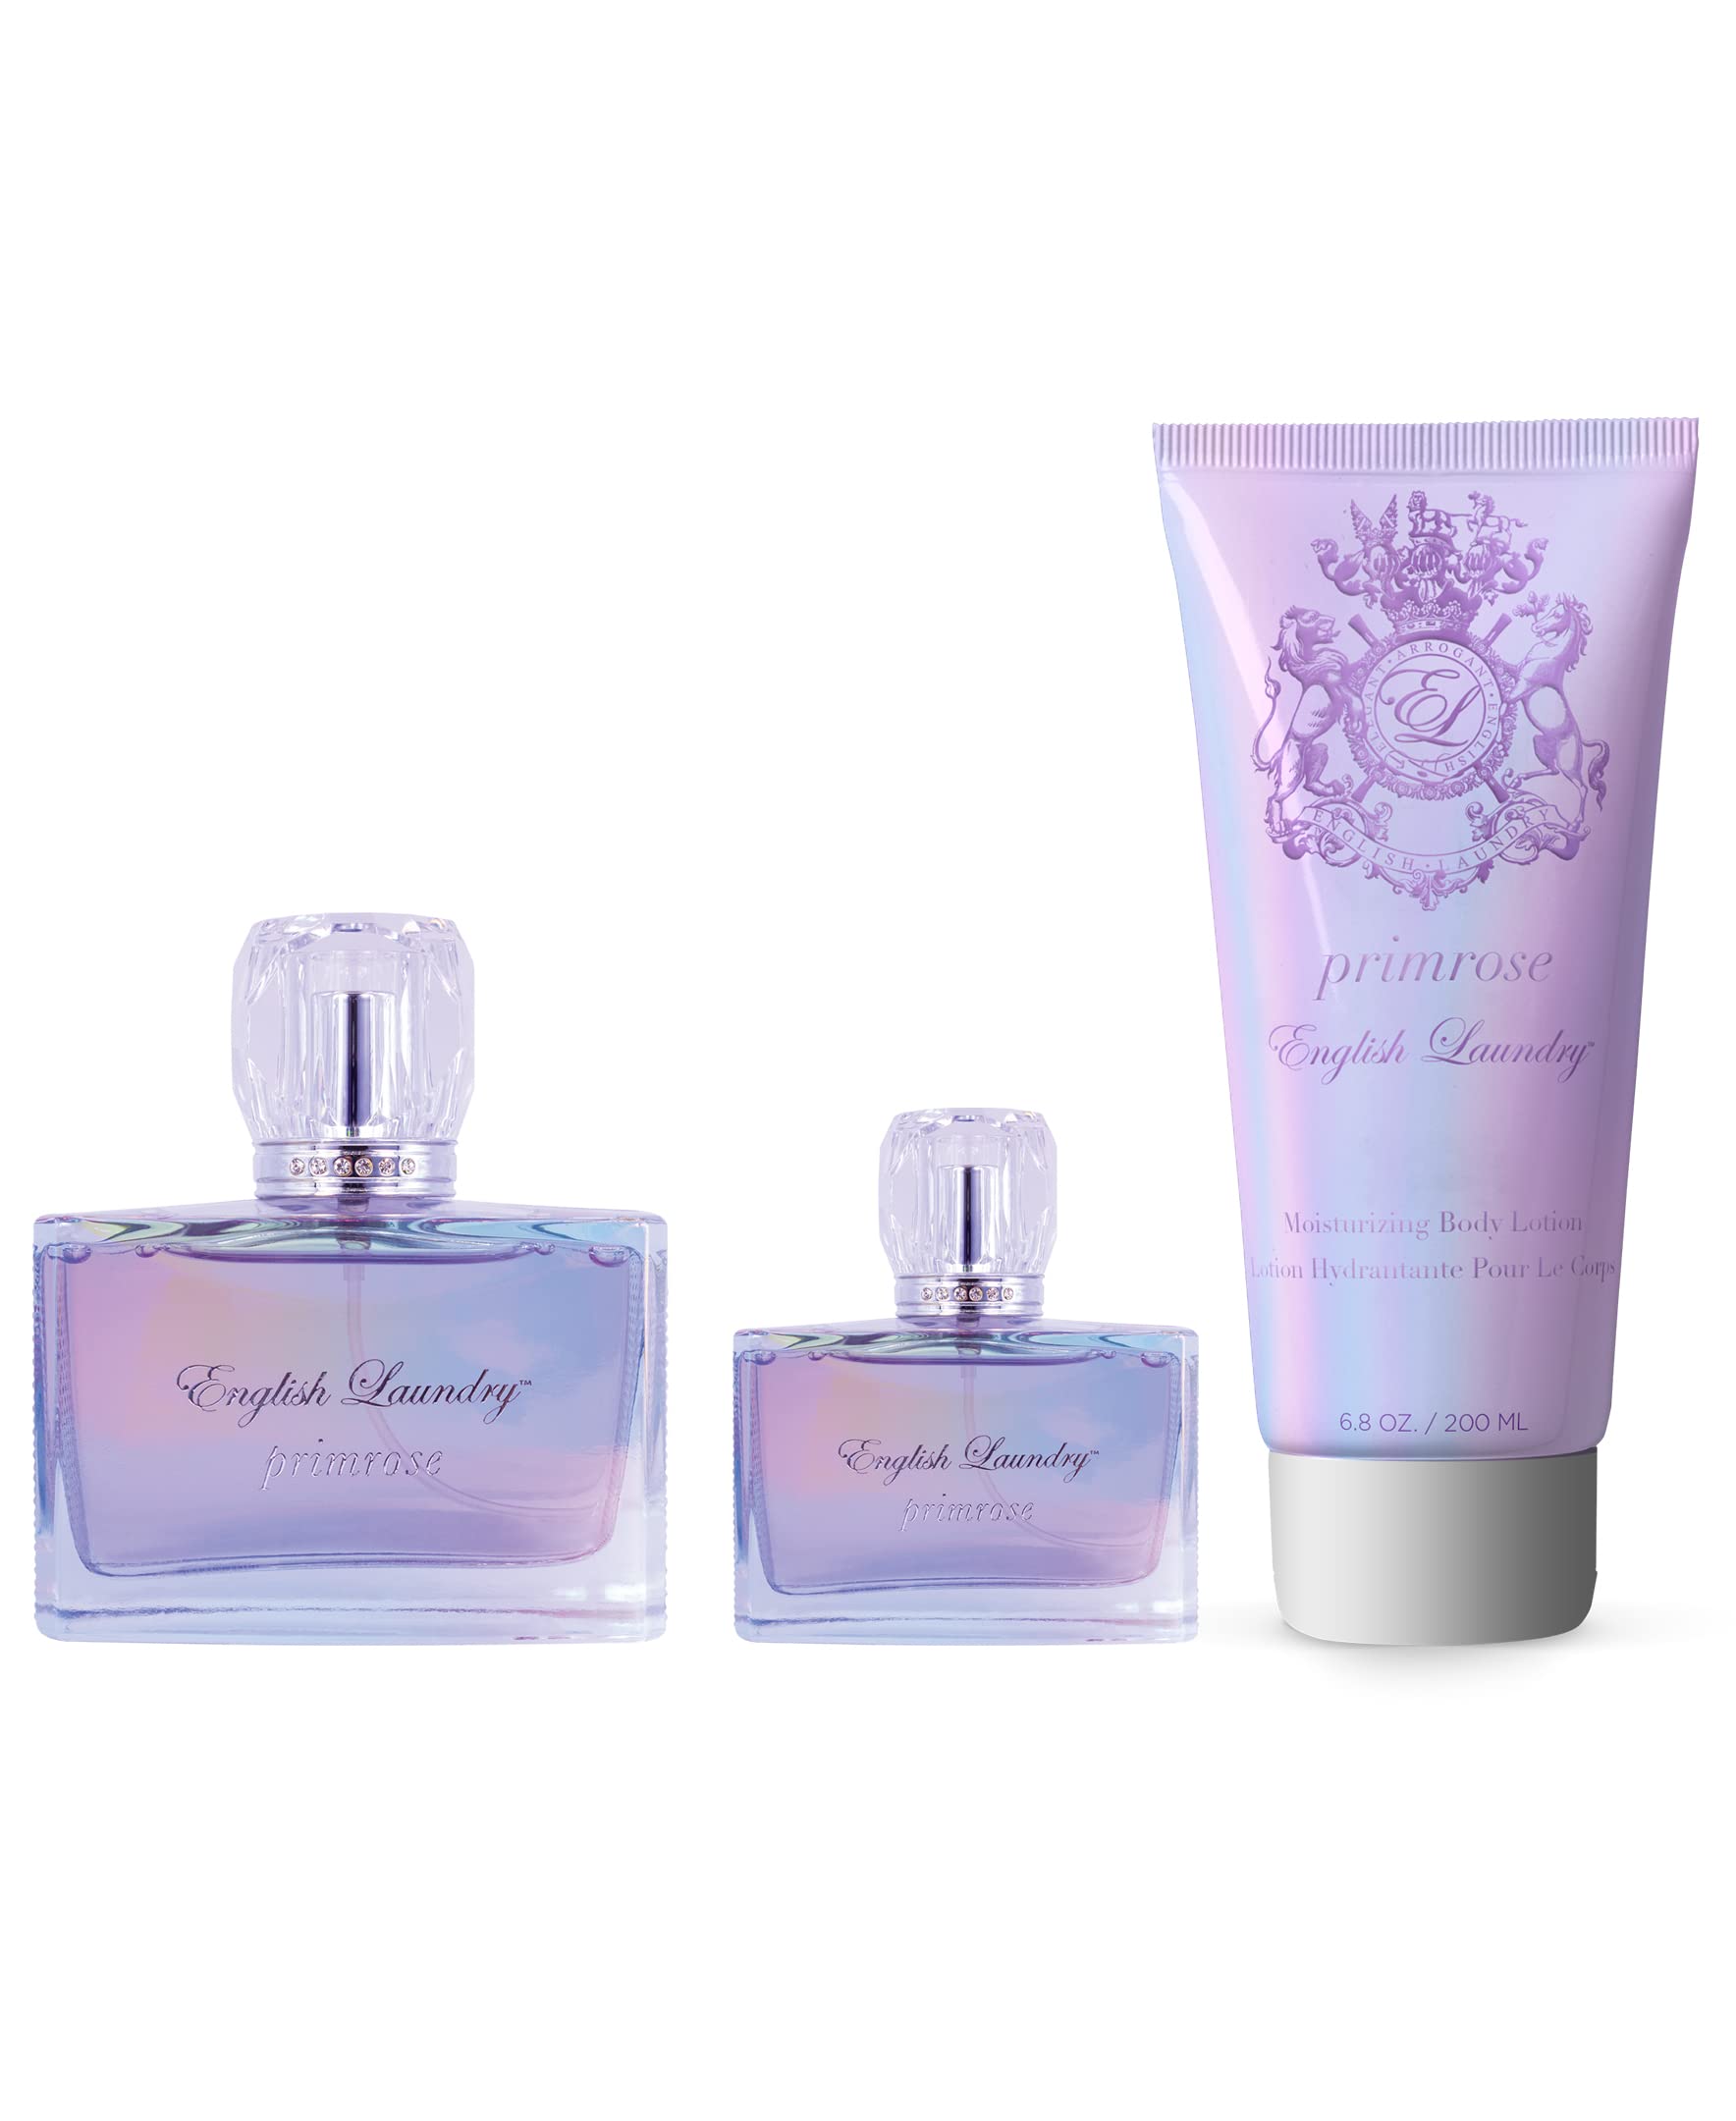 English Laundry Primrose Eau de Parfum Gift Set, 3.4 fl. oz. for Women